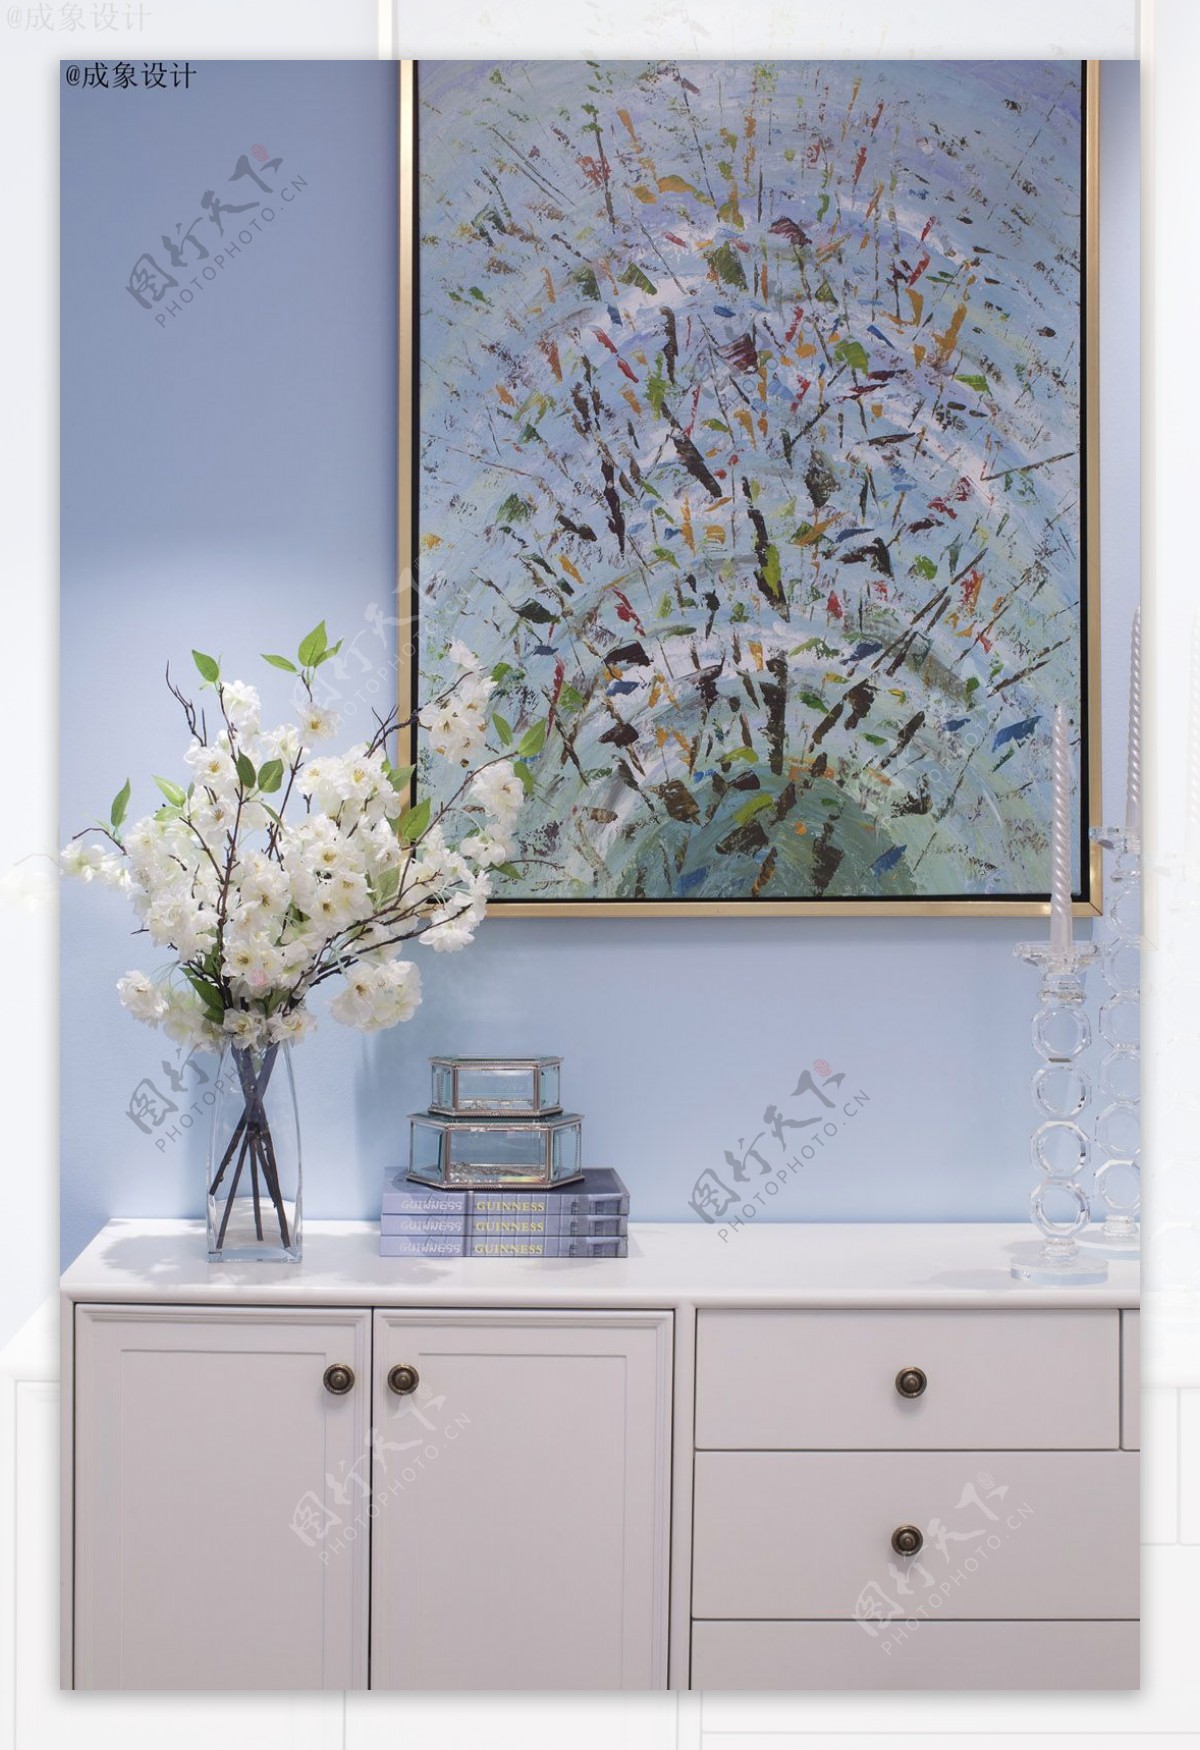 现代美式客厅柜子壁画插花图片